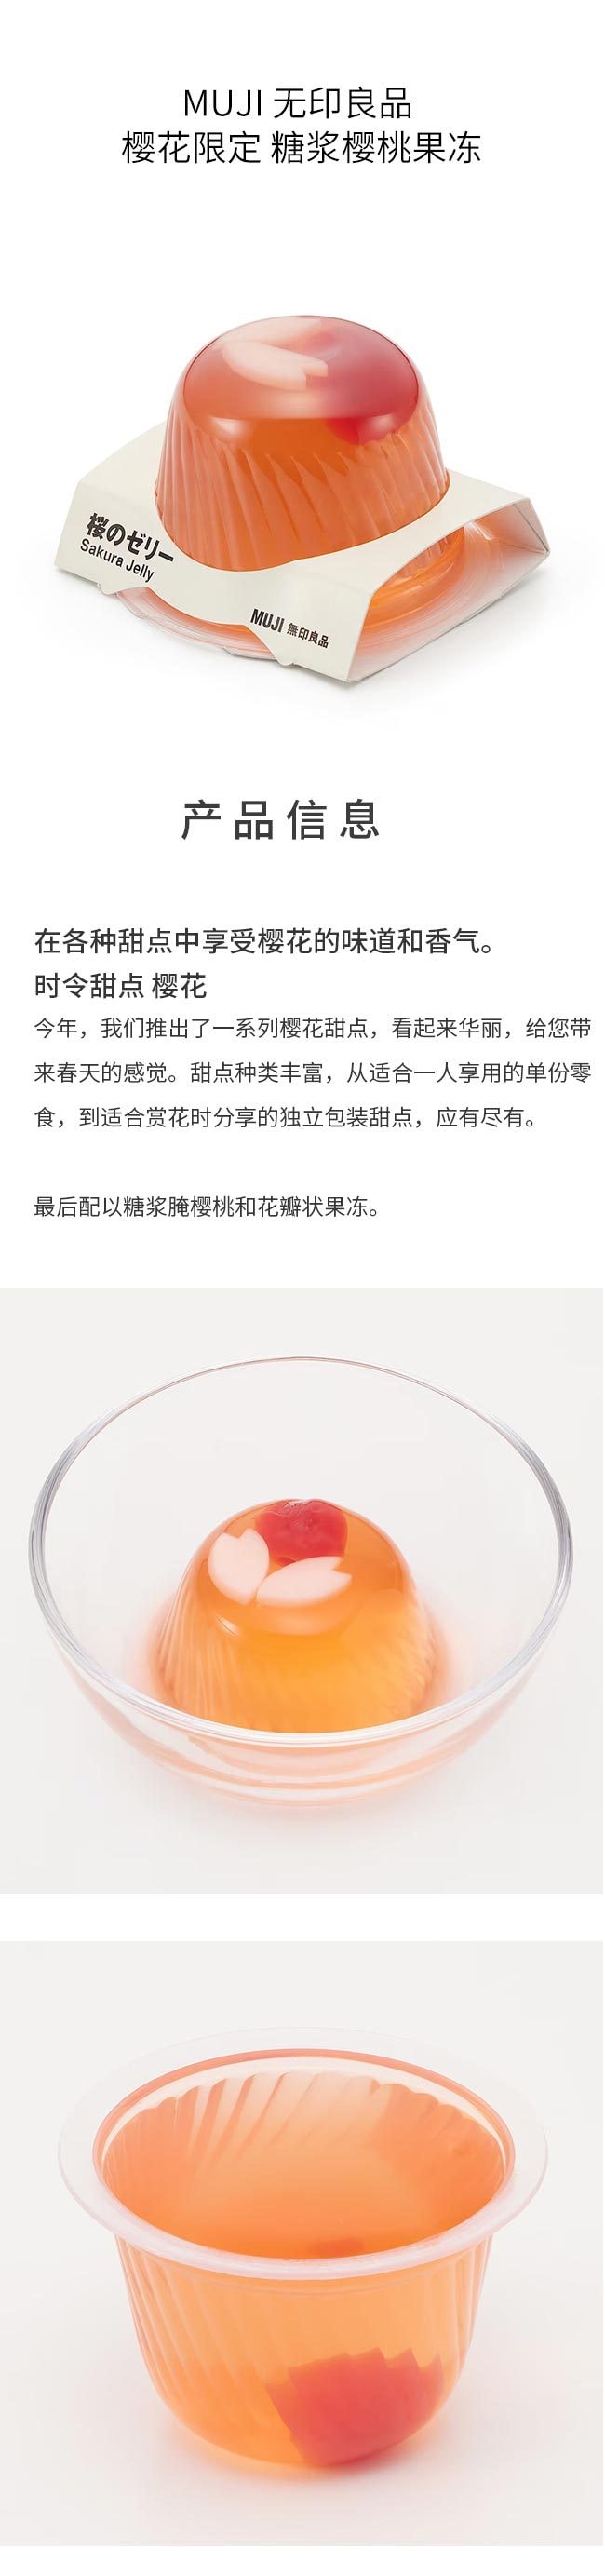 【日本直邮】MUJI 无印良品 樱花限定 糖浆樱桃果冻